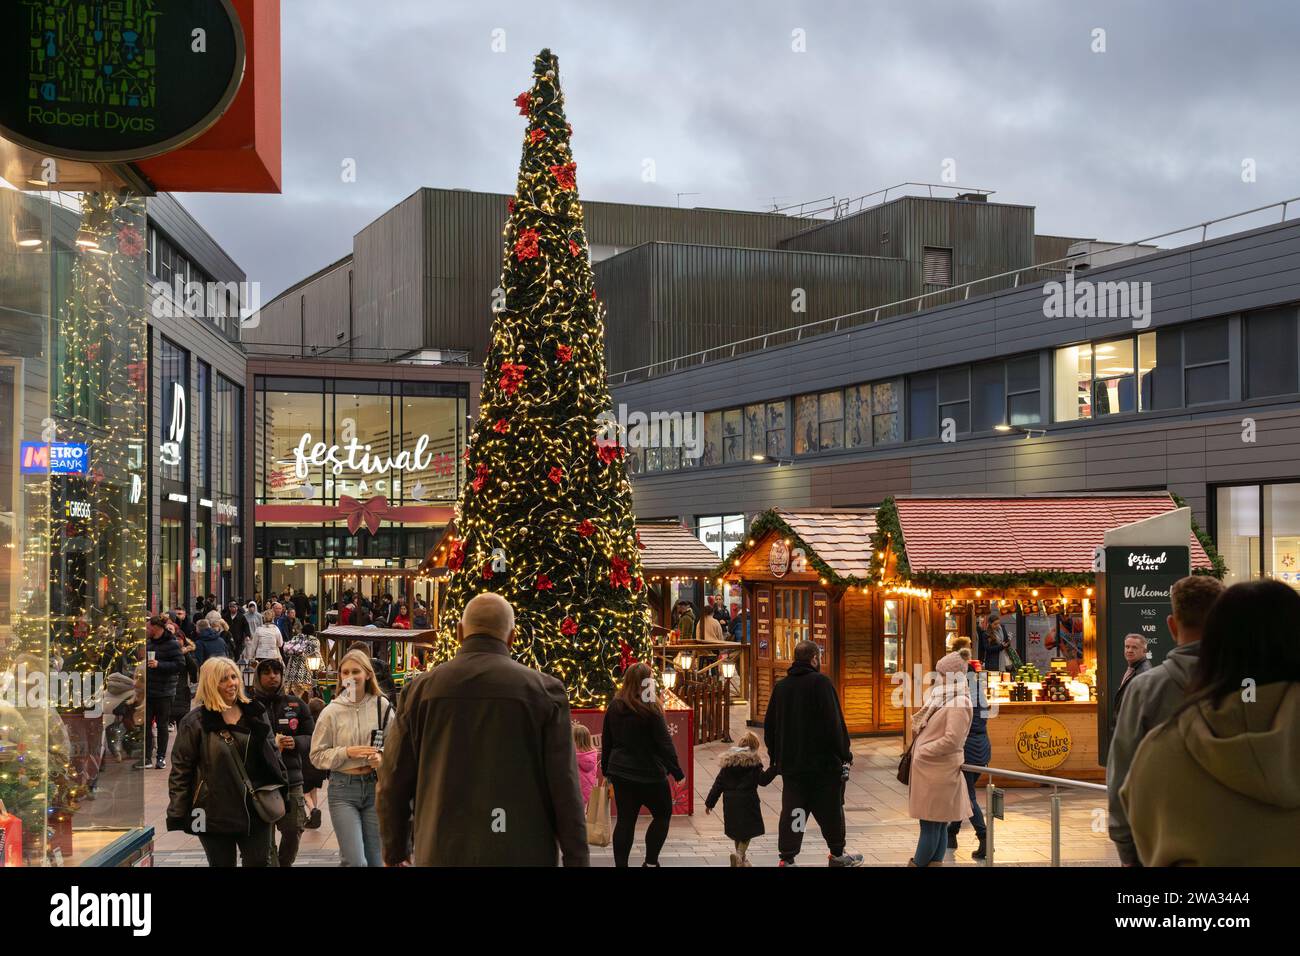 Negozi natalizi, bancarelle del mercato e albero di Natale presso il centro commerciale Malls di fronte al Festival Place al tramonto. Basingstoke, Regno Unito Foto Stock